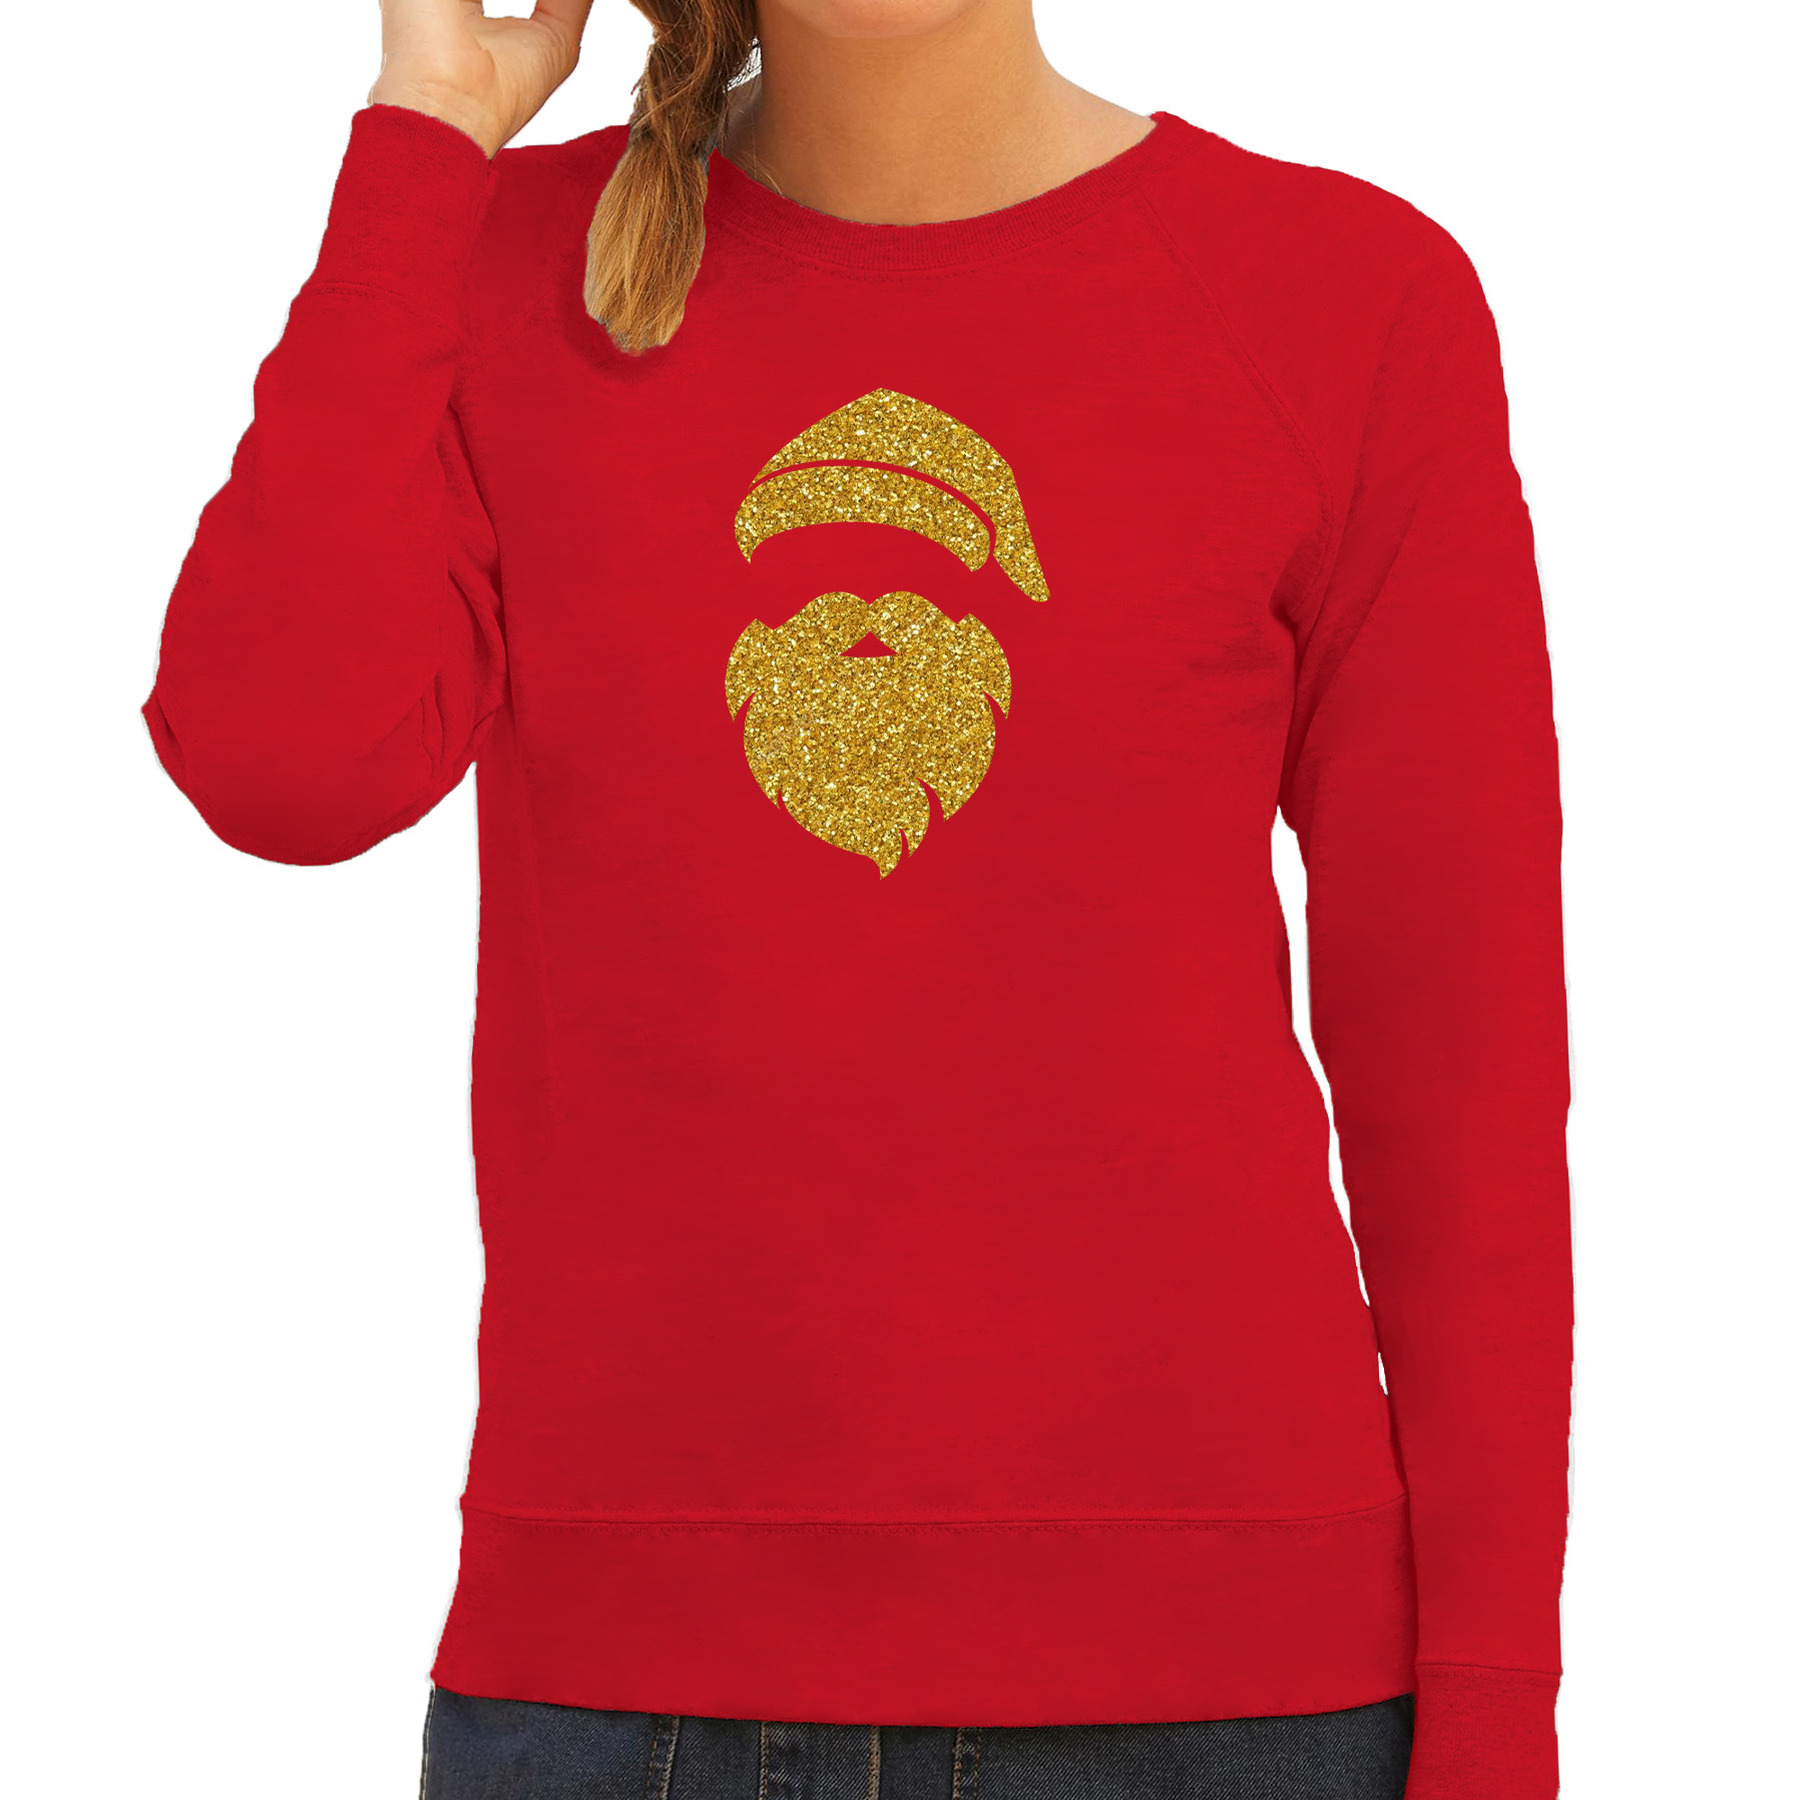 Kerstman hoofd Kerst sweater-trui rood voor dames met gouden glitter bedrukking